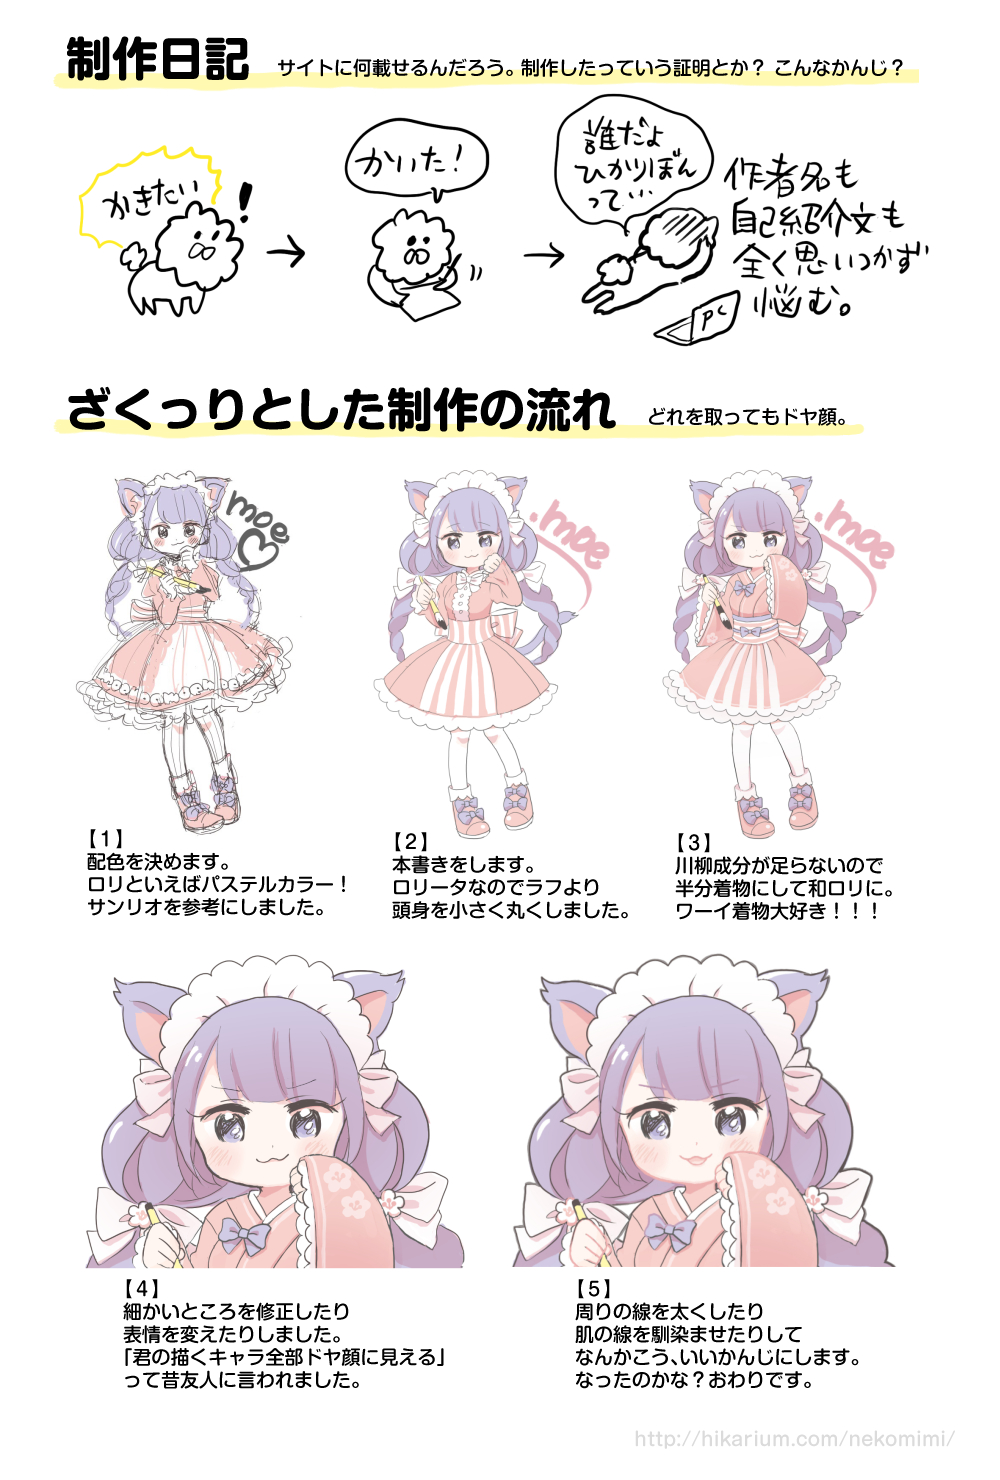 オタク川柳公式キャラクター八代目にゃんこ式部ロリータ系猫耳キャラコンテストの応募用イラストの制作過程です